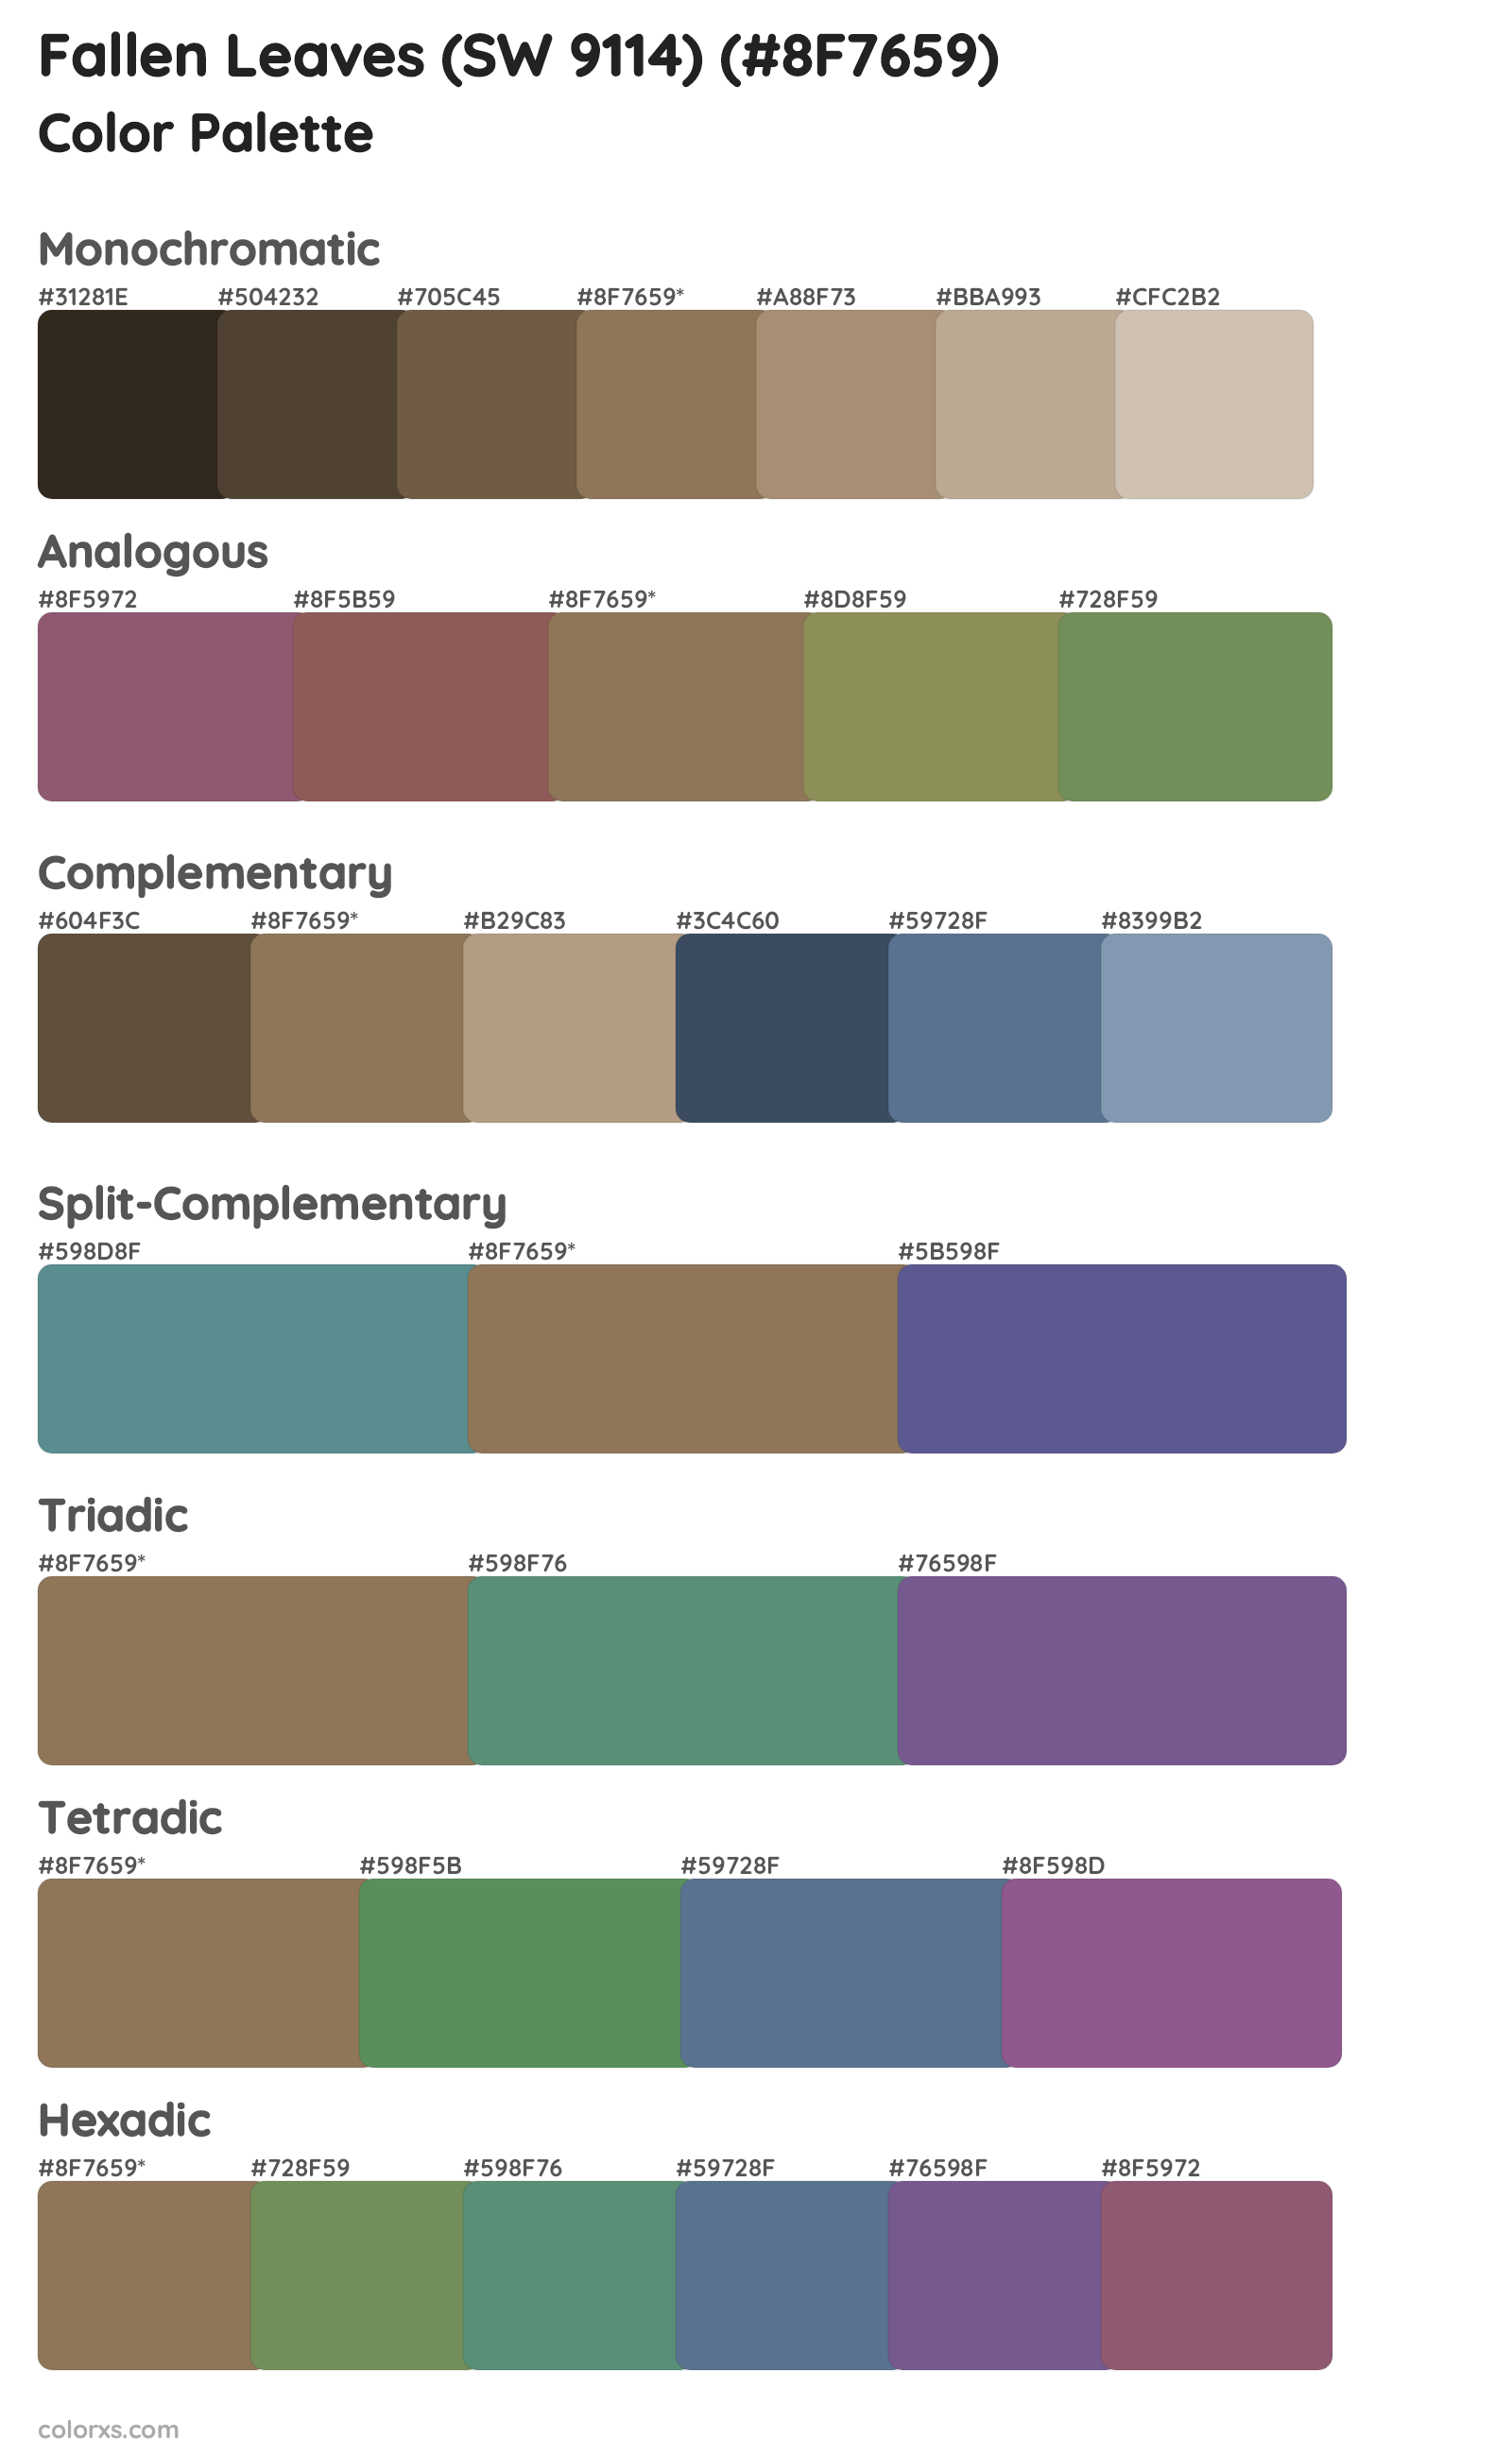 Fallen Leaves (SW 9114) Color Scheme Palettes